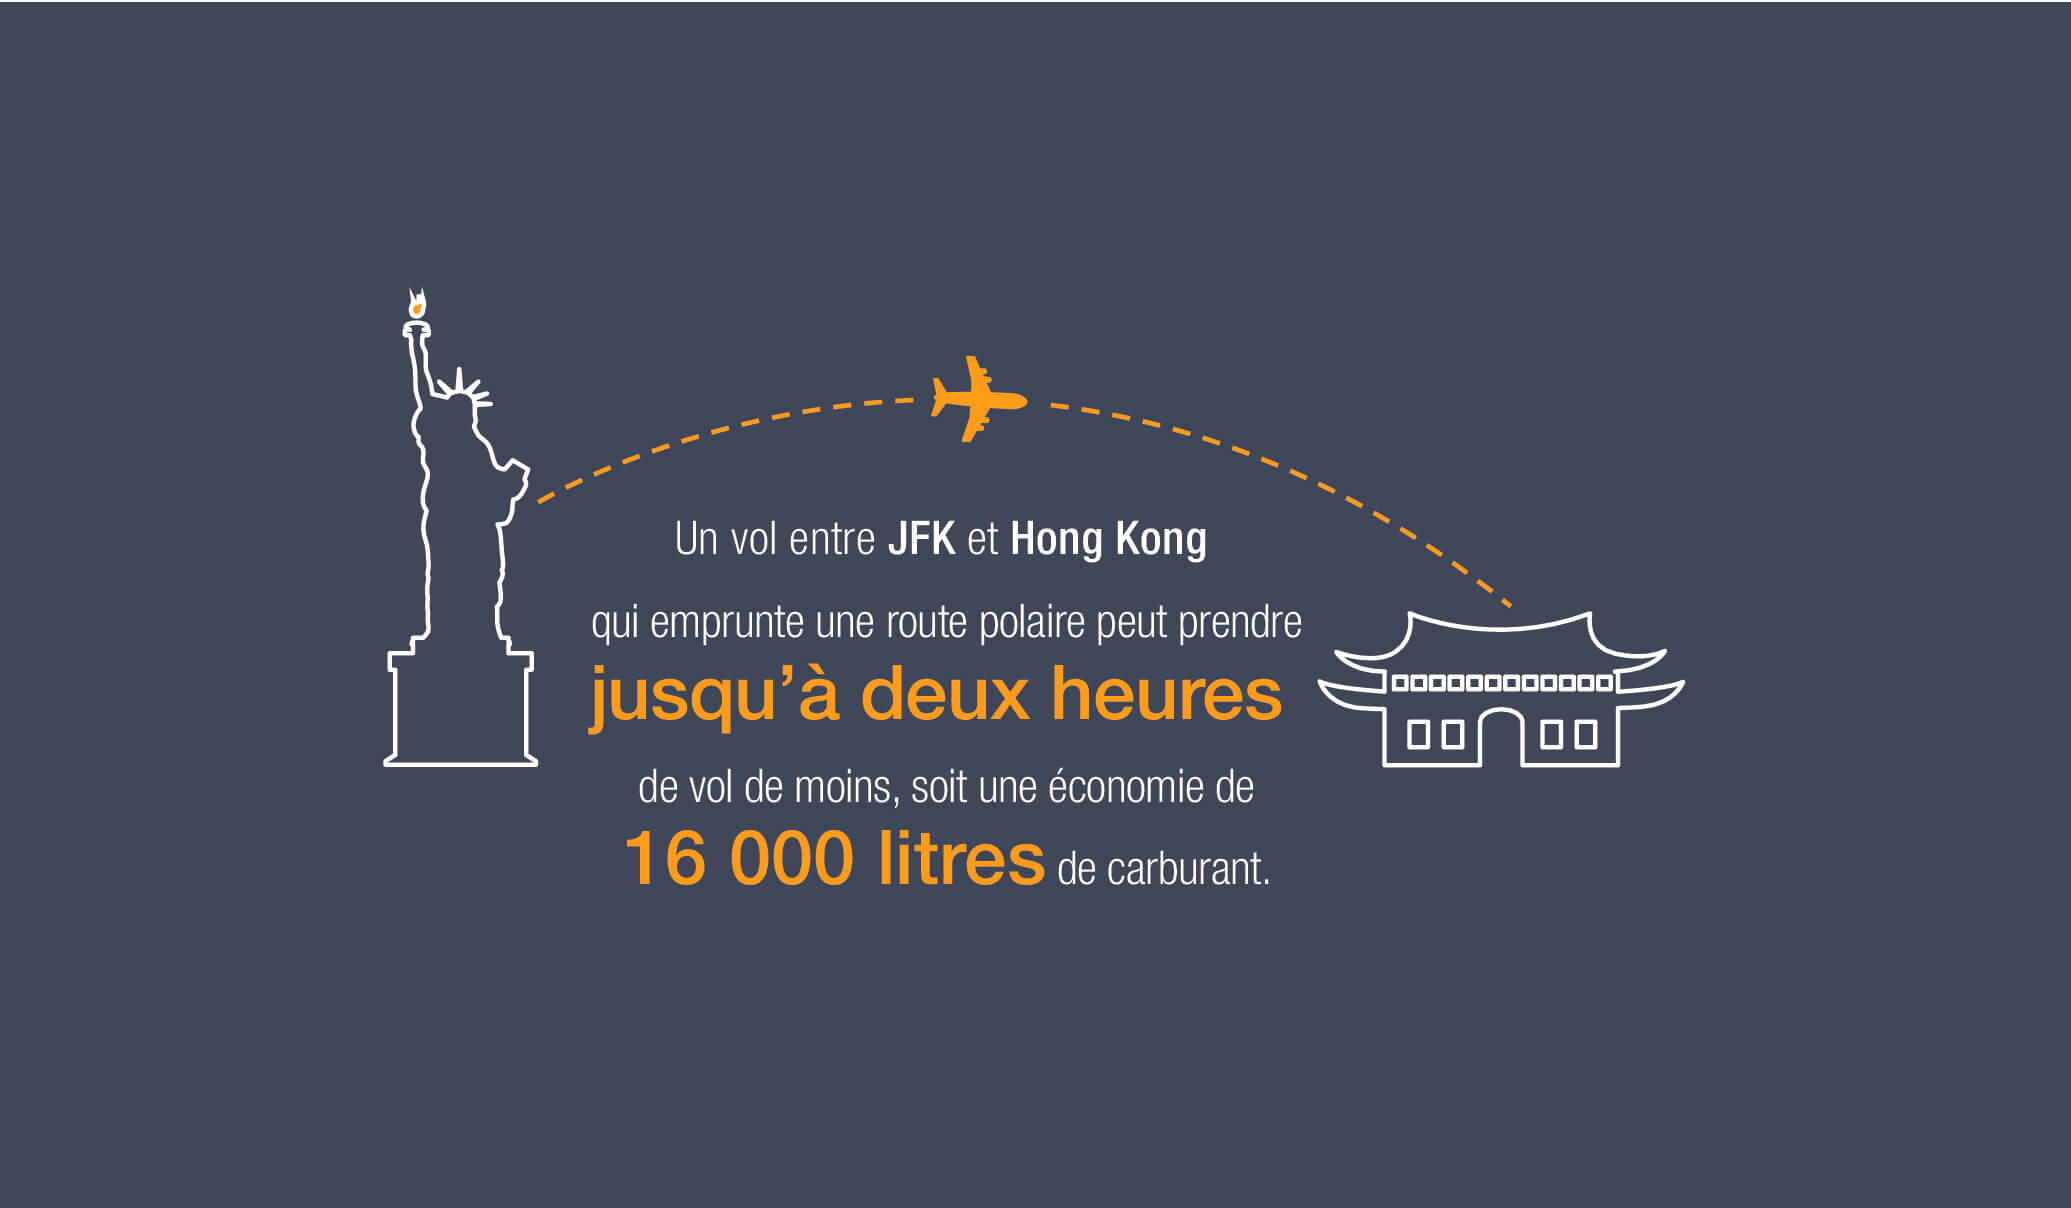 Un vol entre JFK et Hong Kong qui emprunte une route polaire peut prendre jusqu'à deux heures de vol de moins, soit une économie de 16 000 litres de carburant. 